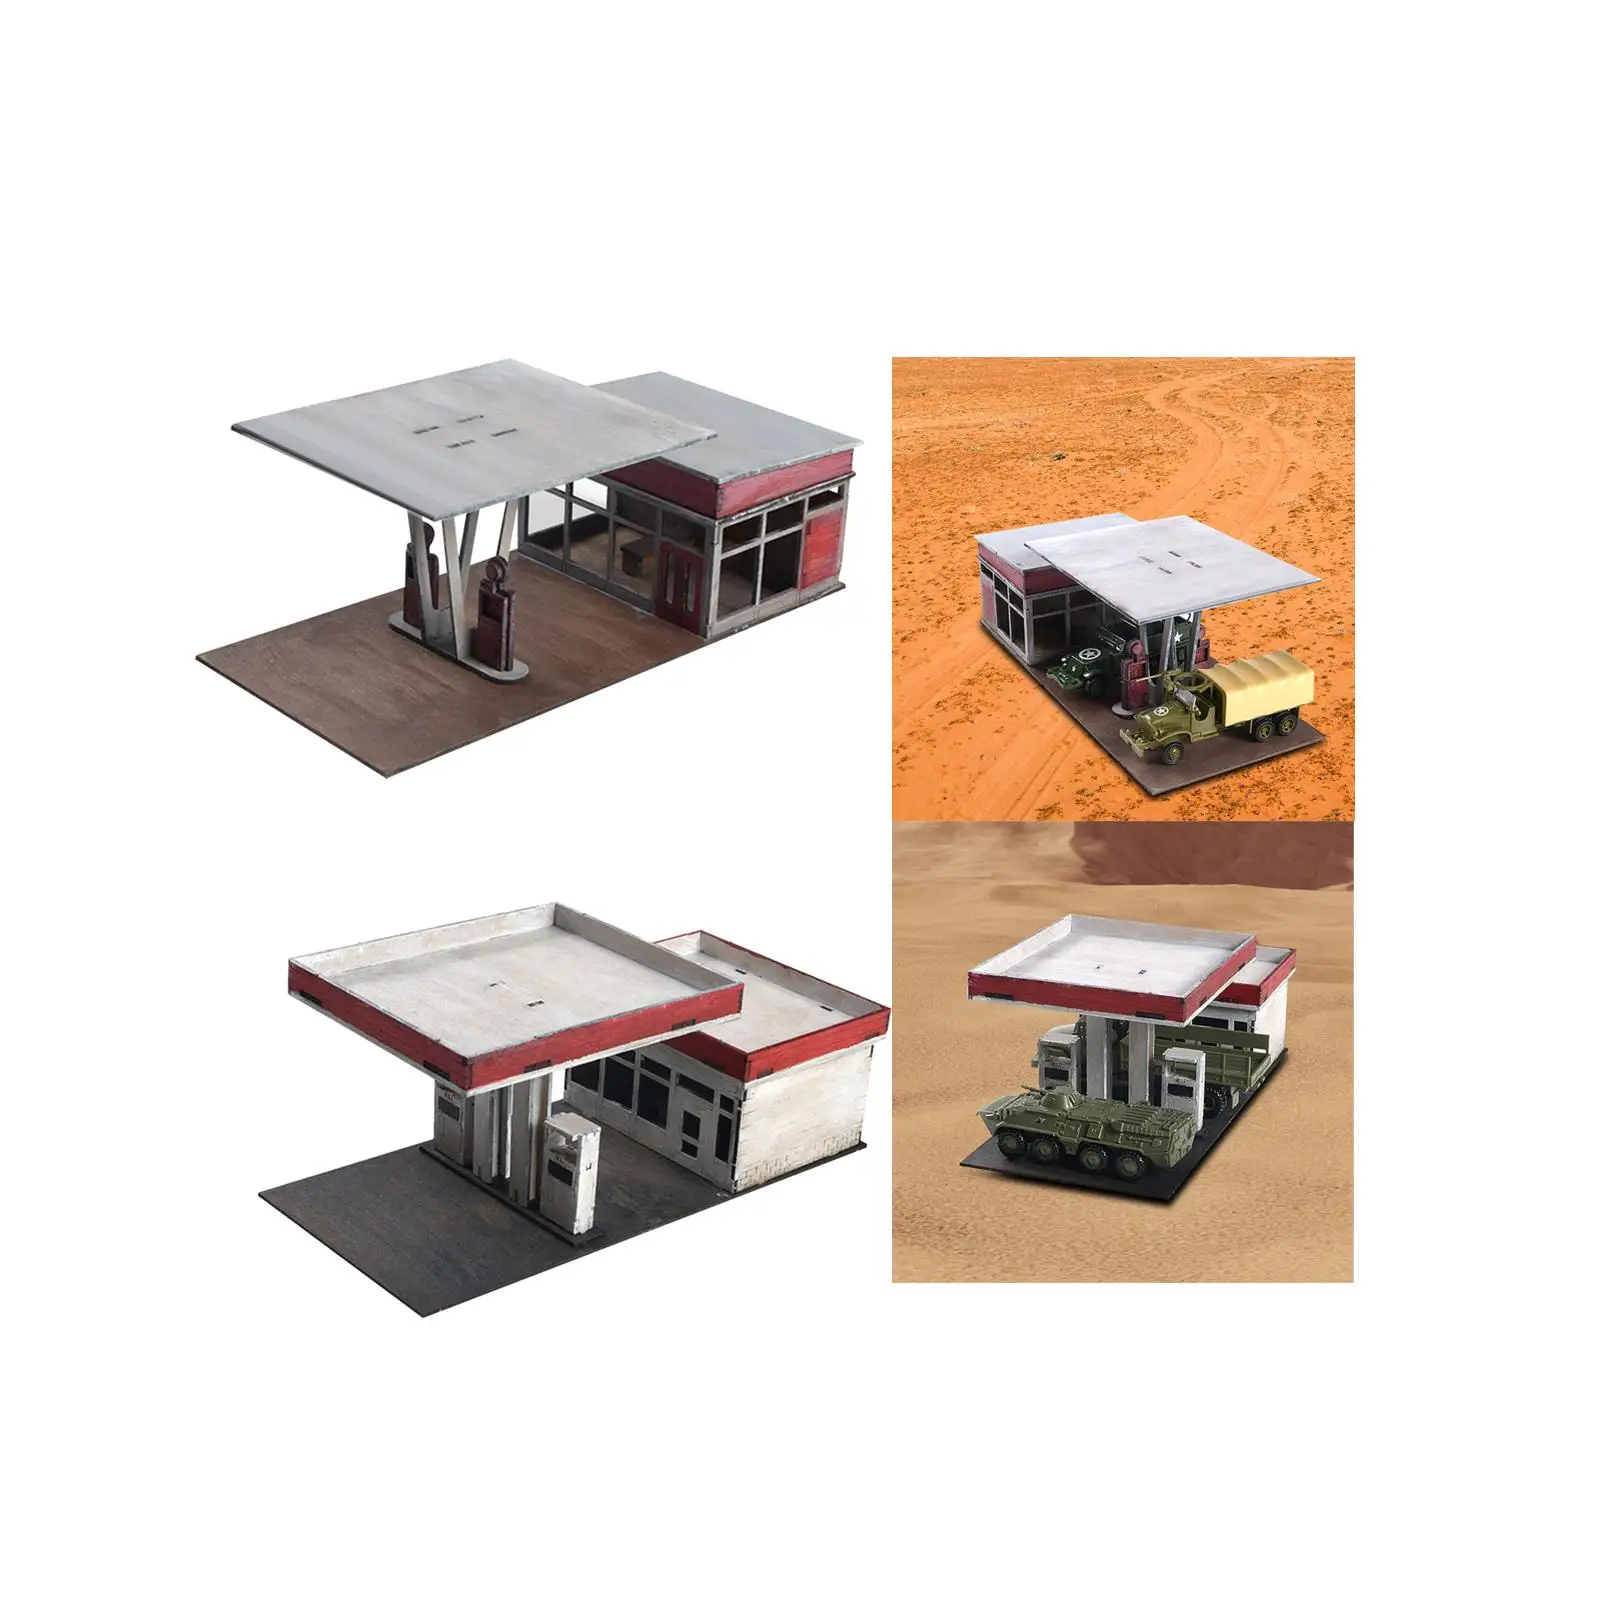 1:72 1:64 Scale Architecture Building Model Kits Landscape Unassembly Architecture Scene Model for Model Railway Accessory Decor